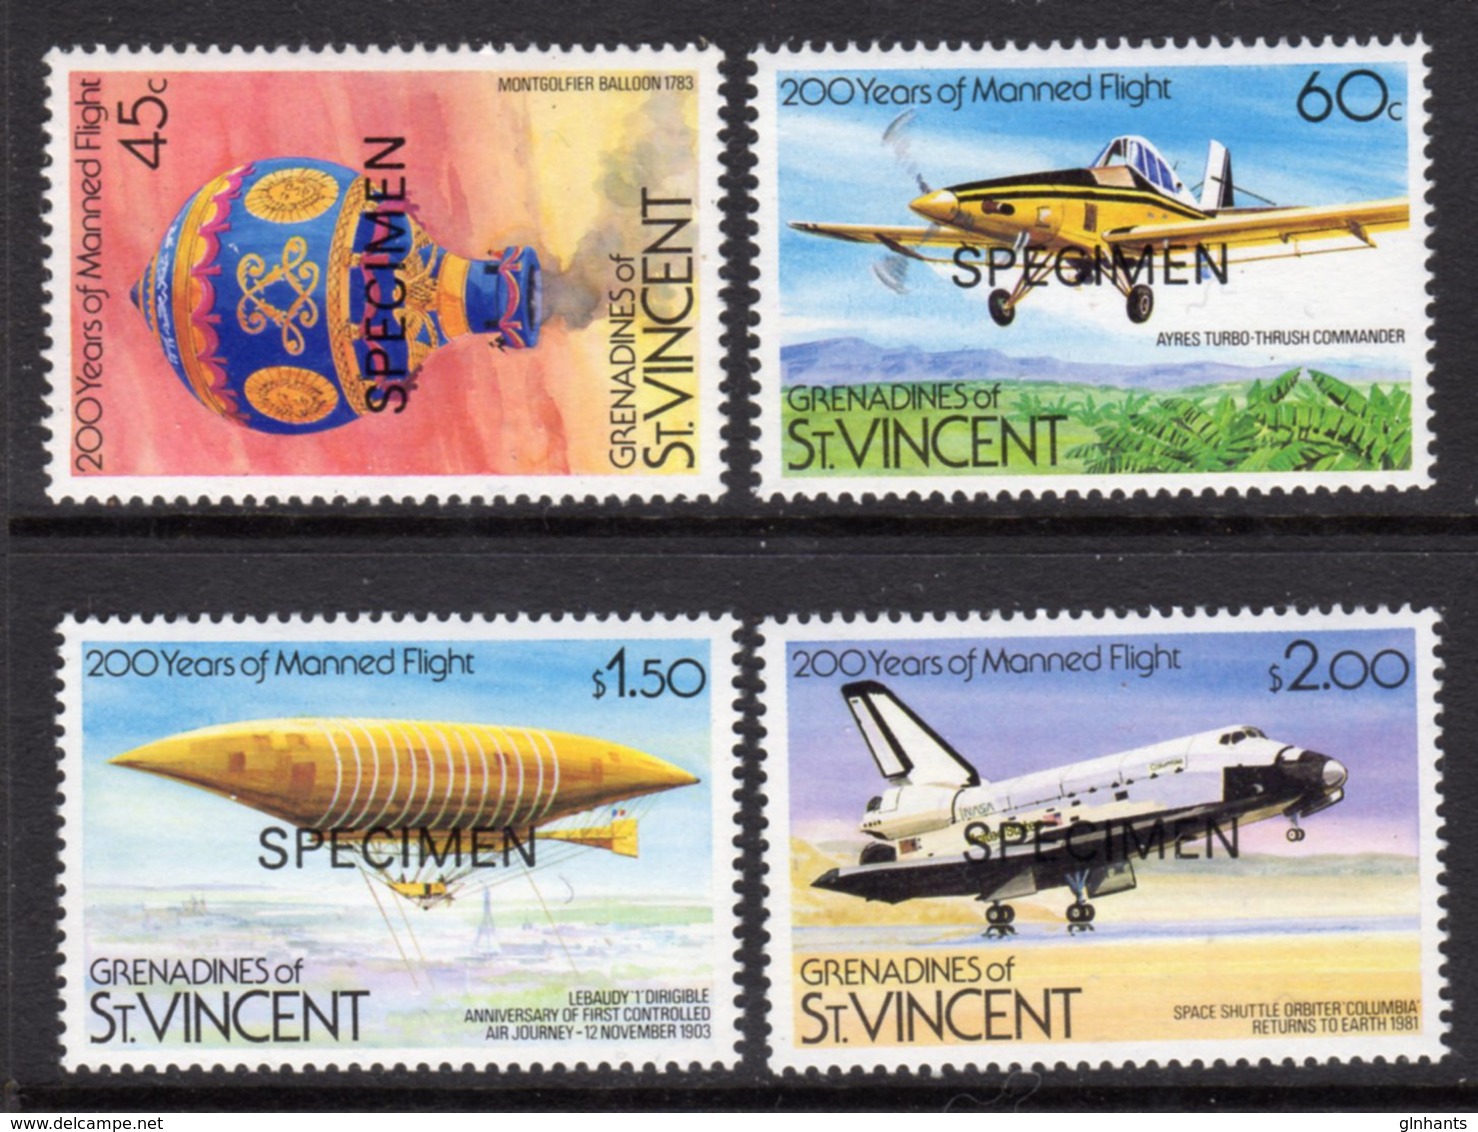 ST VINCENT GRENADINES - 1983 MANNED FLIGHT ANNIVERSARY SET (4V) O/P SPECIMEN FINE MNH ** SG 250-253 - St.Vincent & Grenadines